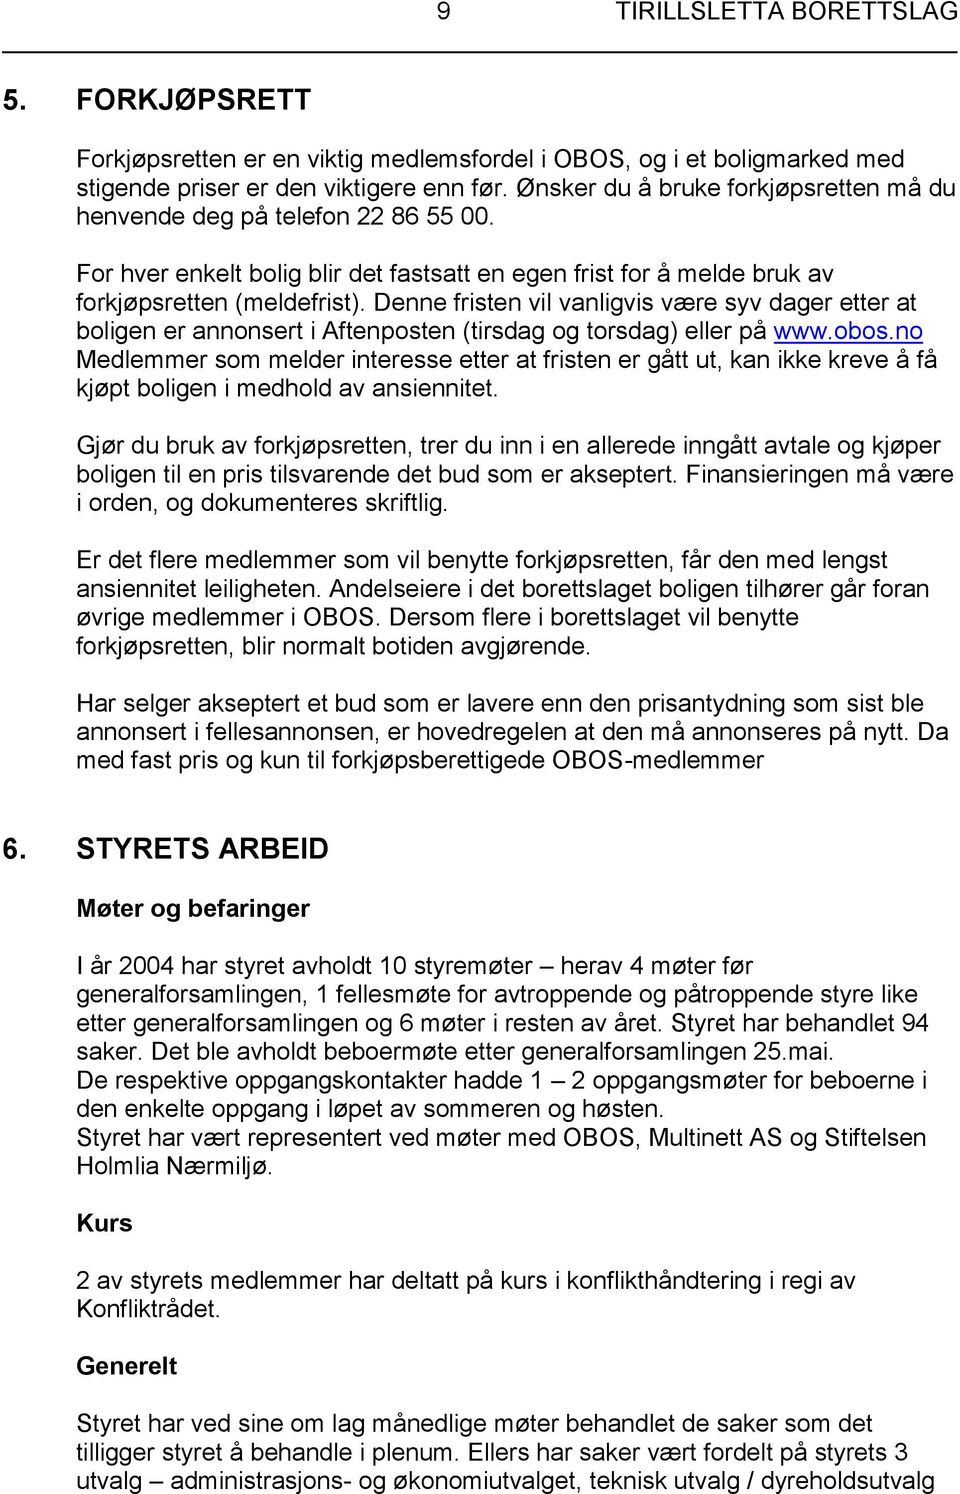 Denne fristen vil vanligvis være syv dager etter at boligen er annonsert i Aftenposten (tirsdag og torsdag) eller på www.obos.